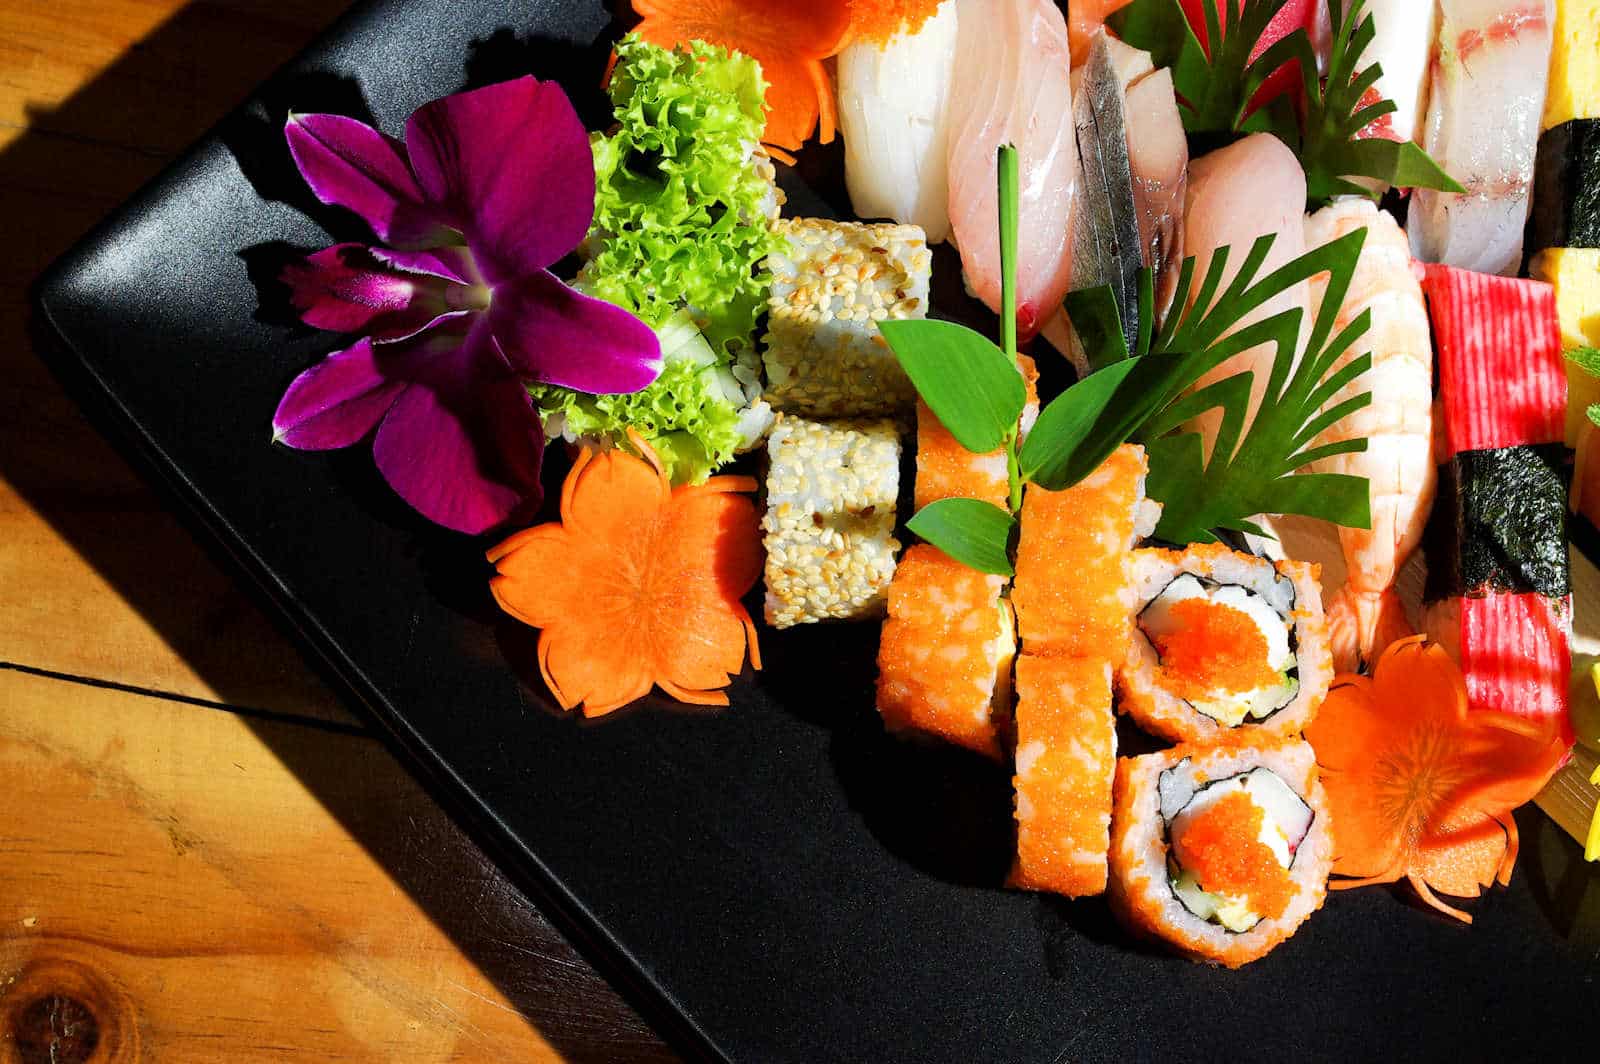 O I Shii Sushi & Japanese of Fort Worth